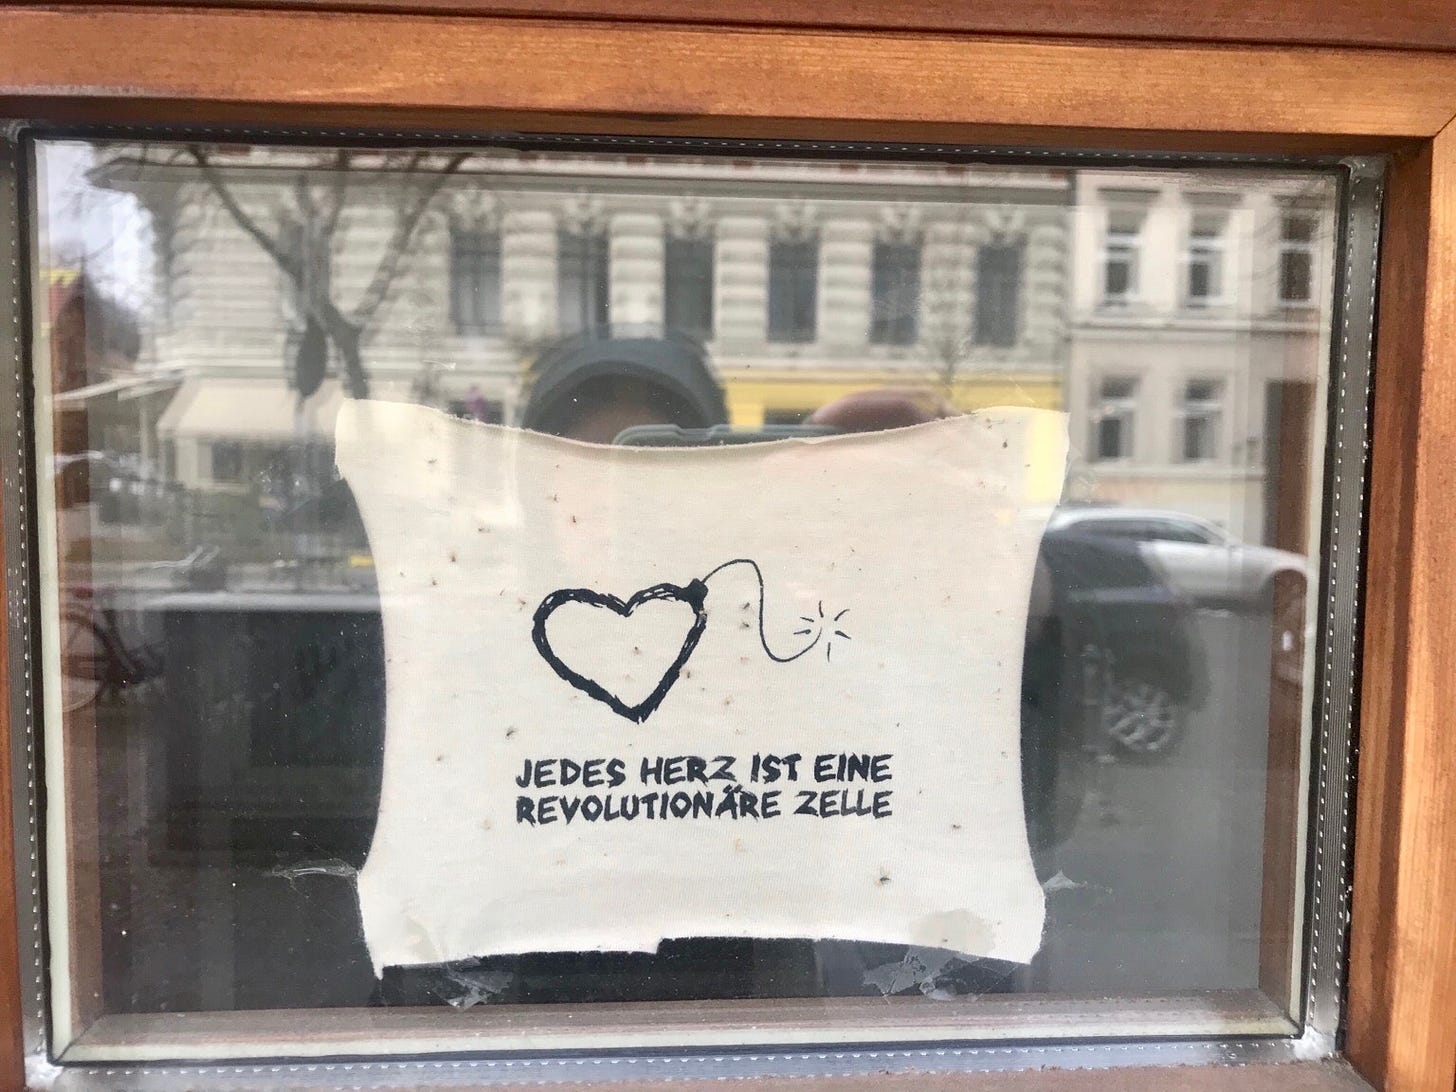 An einer Fensterscheibe klebt ein Stück Stoff mit dem Spruch "jedes Herz ist eine revolutionäre Zelle." In der Scheibe spiegeln sich die Straße, Autos, ein Haus und die fotografierende Person mit ihrem Handy.